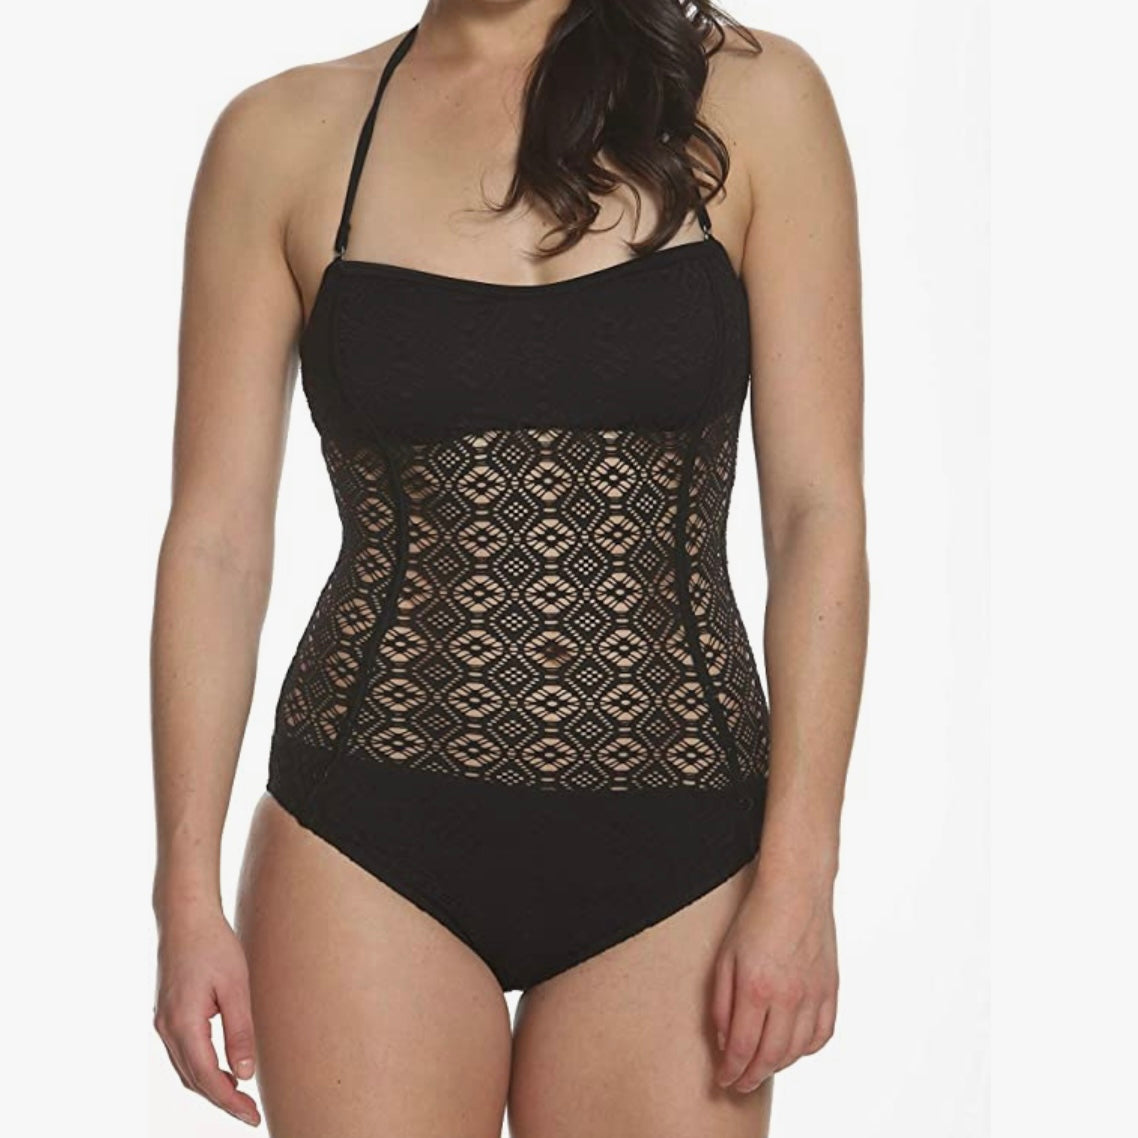 Black Lace One-Piece Swimsuit Strapless Women's Swimwear